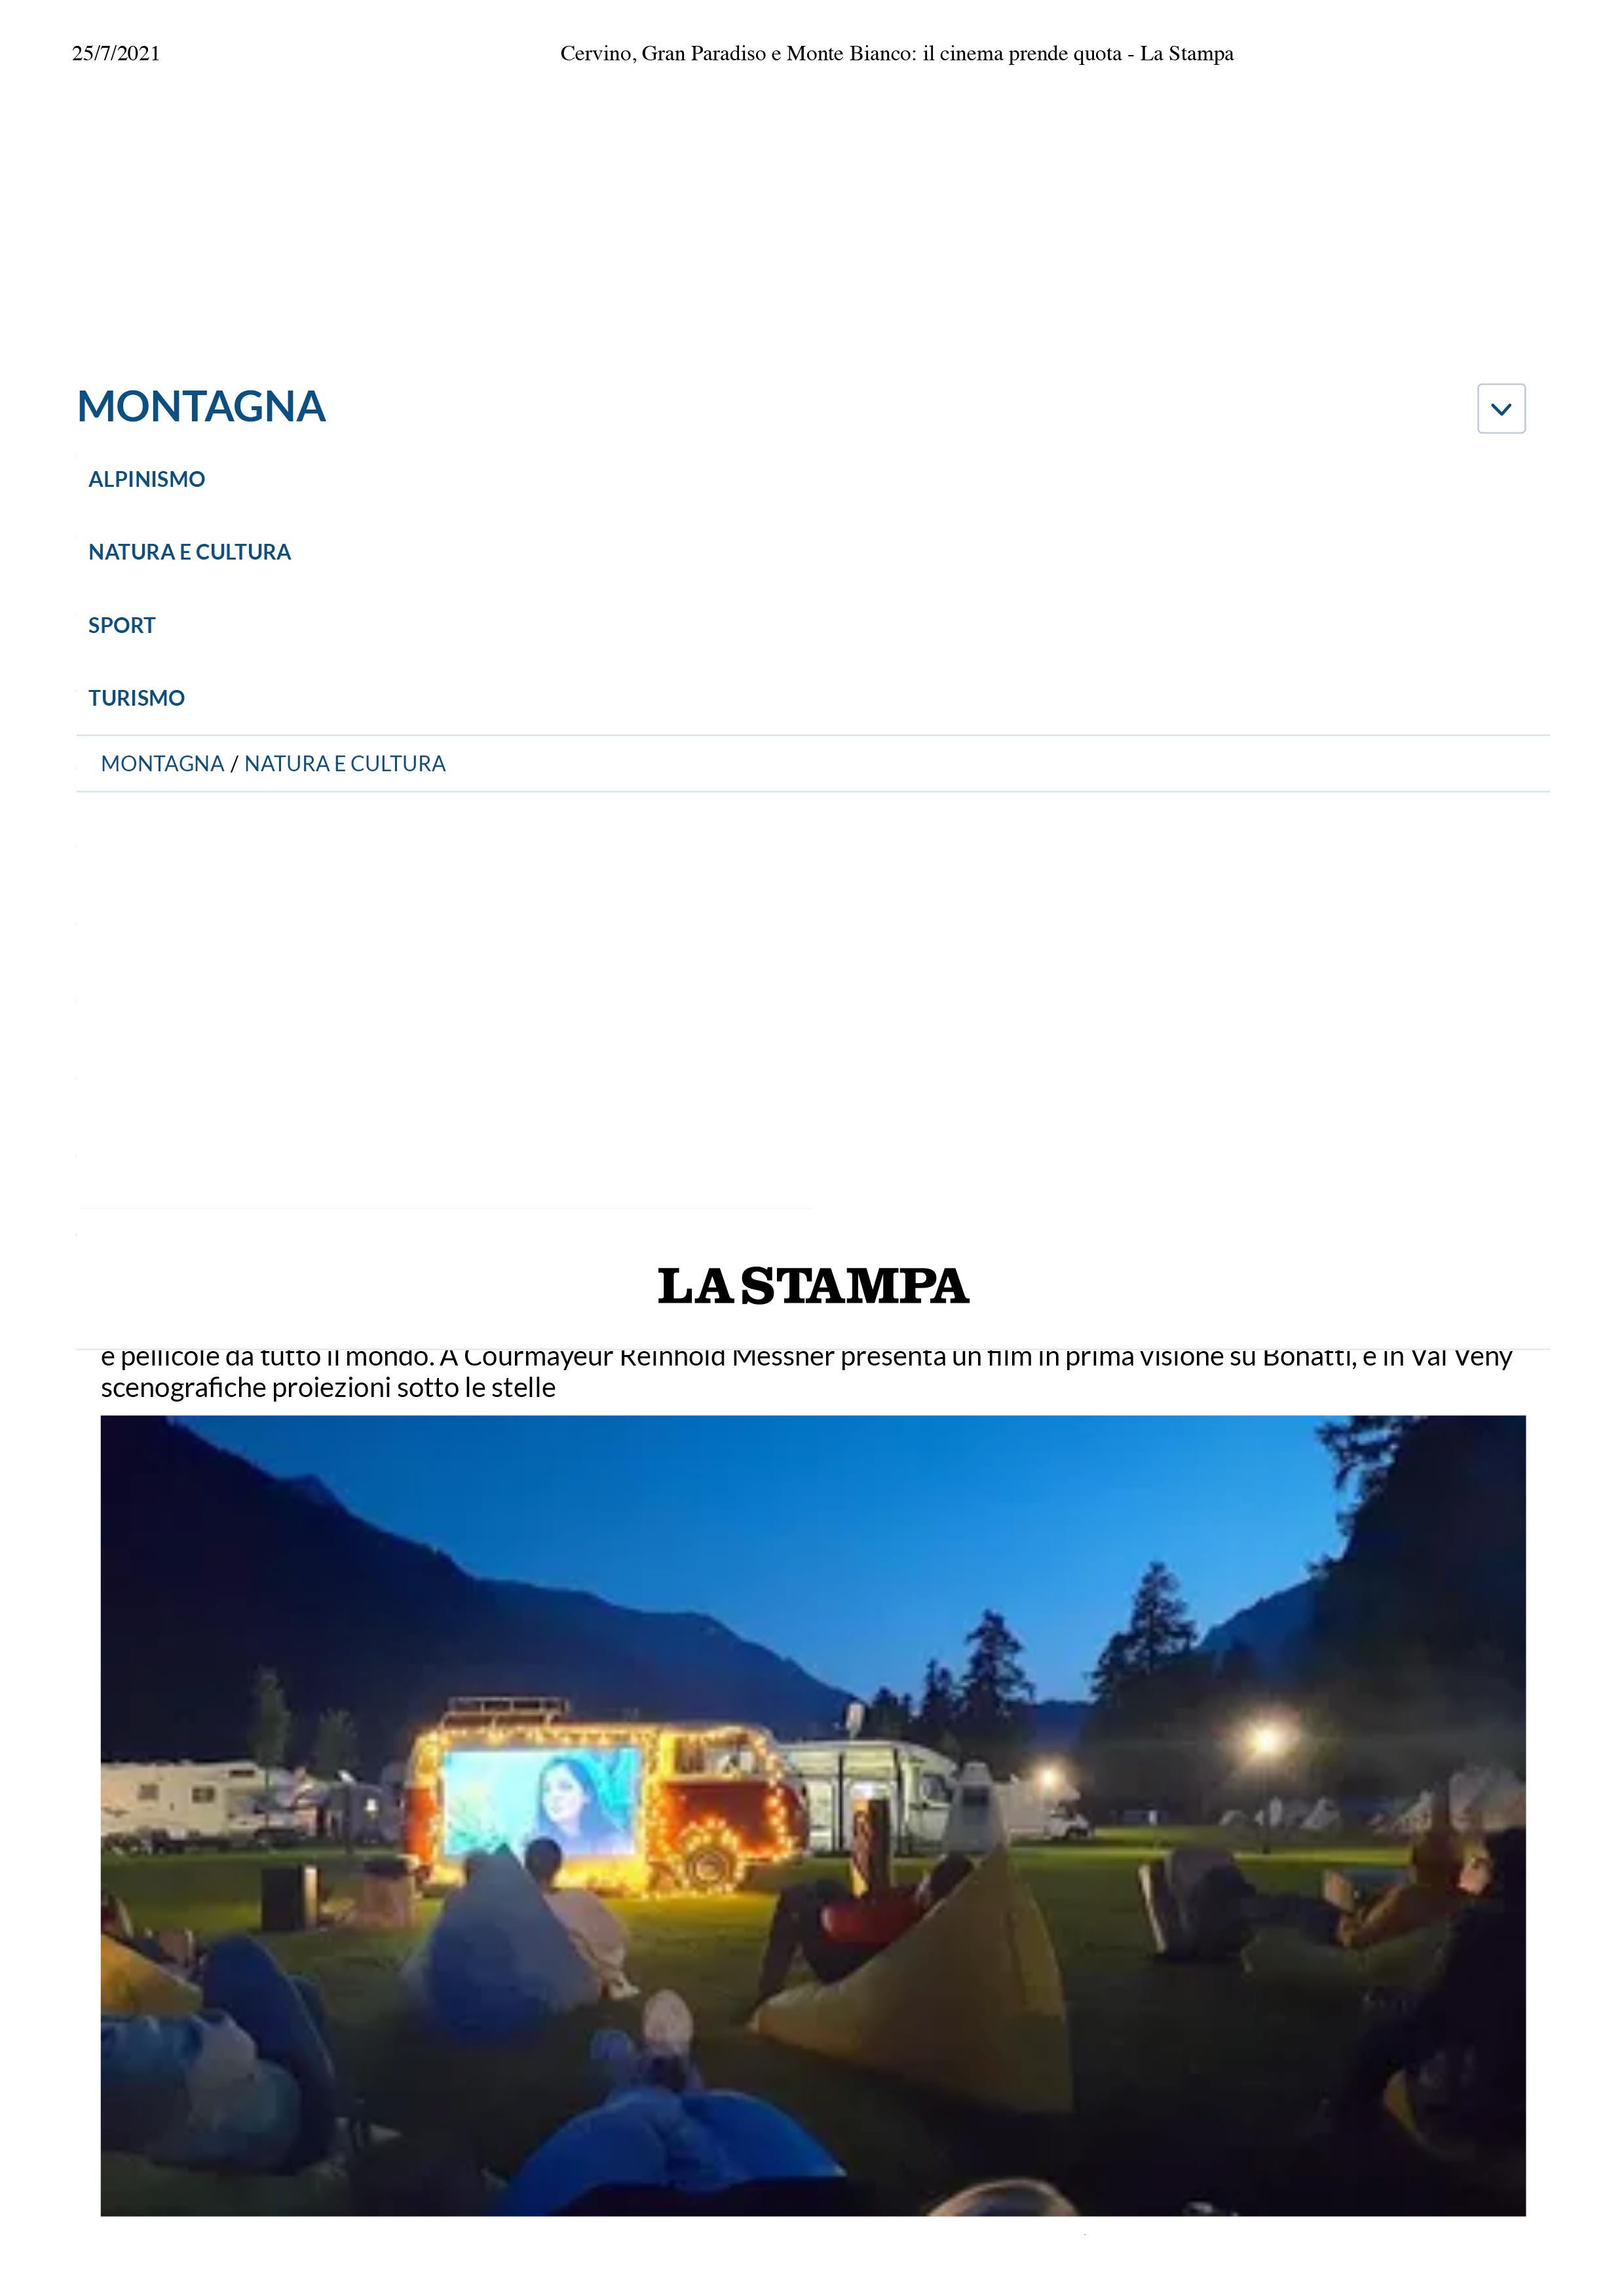 2021-07-25_La-Stampa_Cervino,-Gran-Paradiso-e-Monte-Bianco_-il-cinema-prende-quota-1